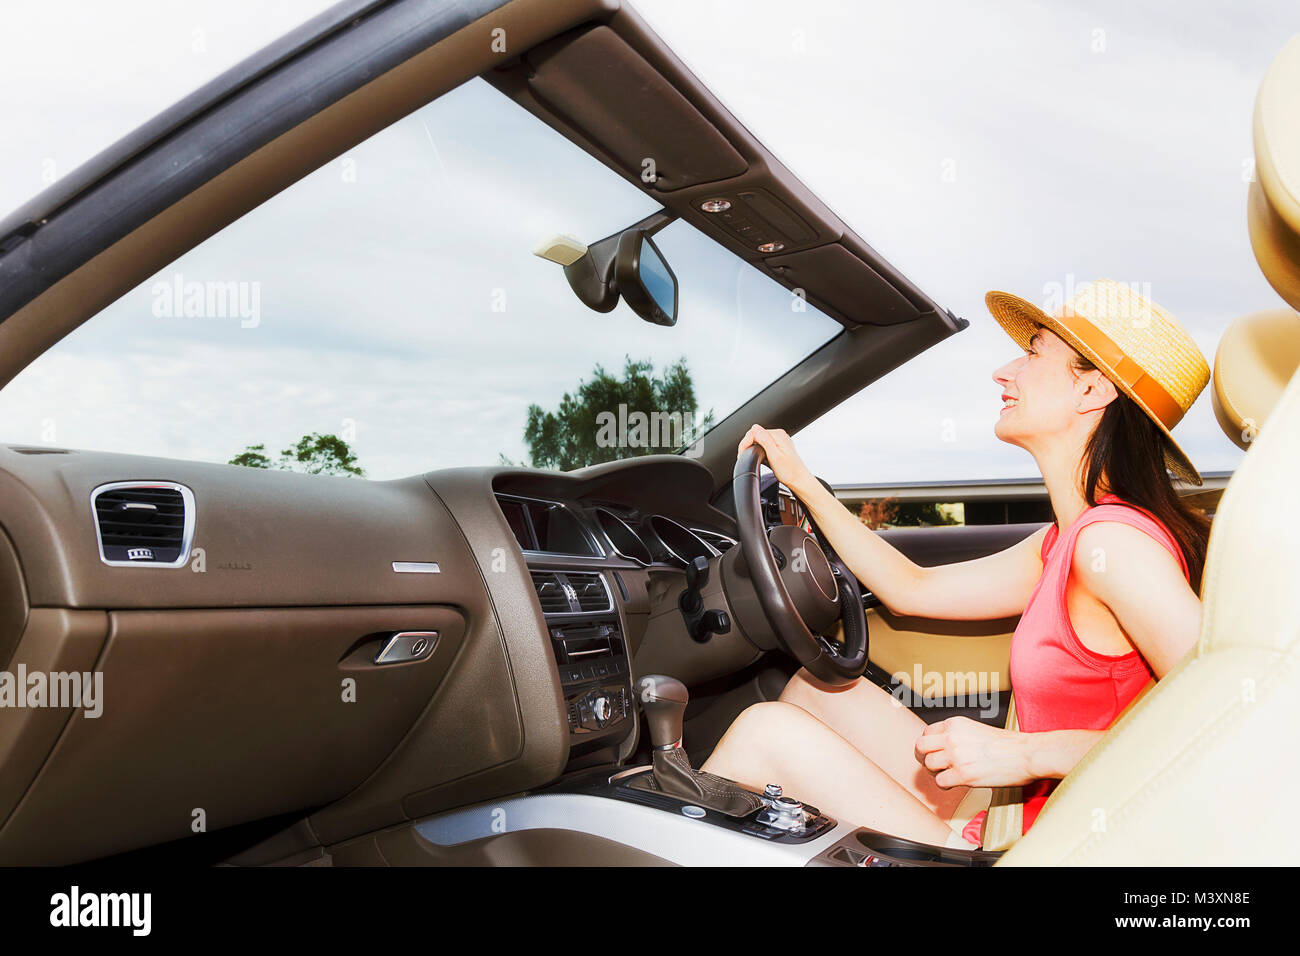 Jeune femme assise conducteur du luxe moderne voiture décapotable avec capote ouverte en vertu de l'open sky Conduite et direction de la liberté. Banque D'Images